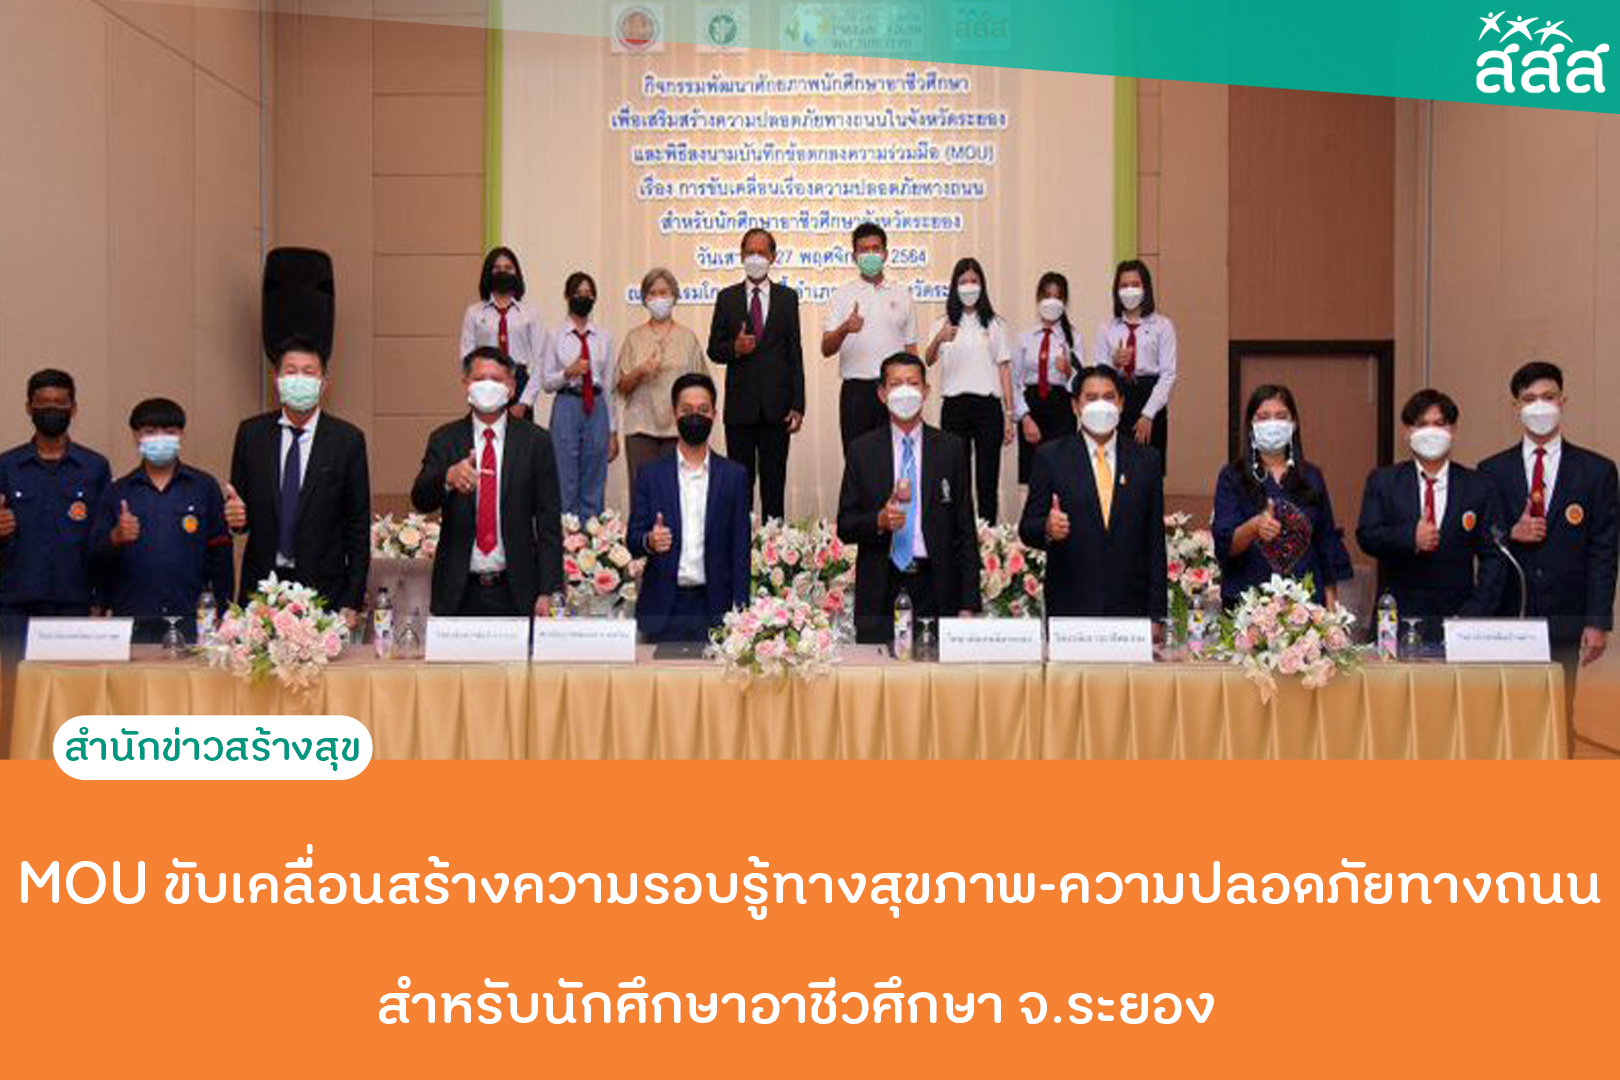 MOU ขับเคลื่อนสร้างความรอบรู้ทางสุขภาพ-ความปลอดภัยทางถนนสำหรับนักศึกษาอาชีวศึกษา จ.ระยอง thaihealth